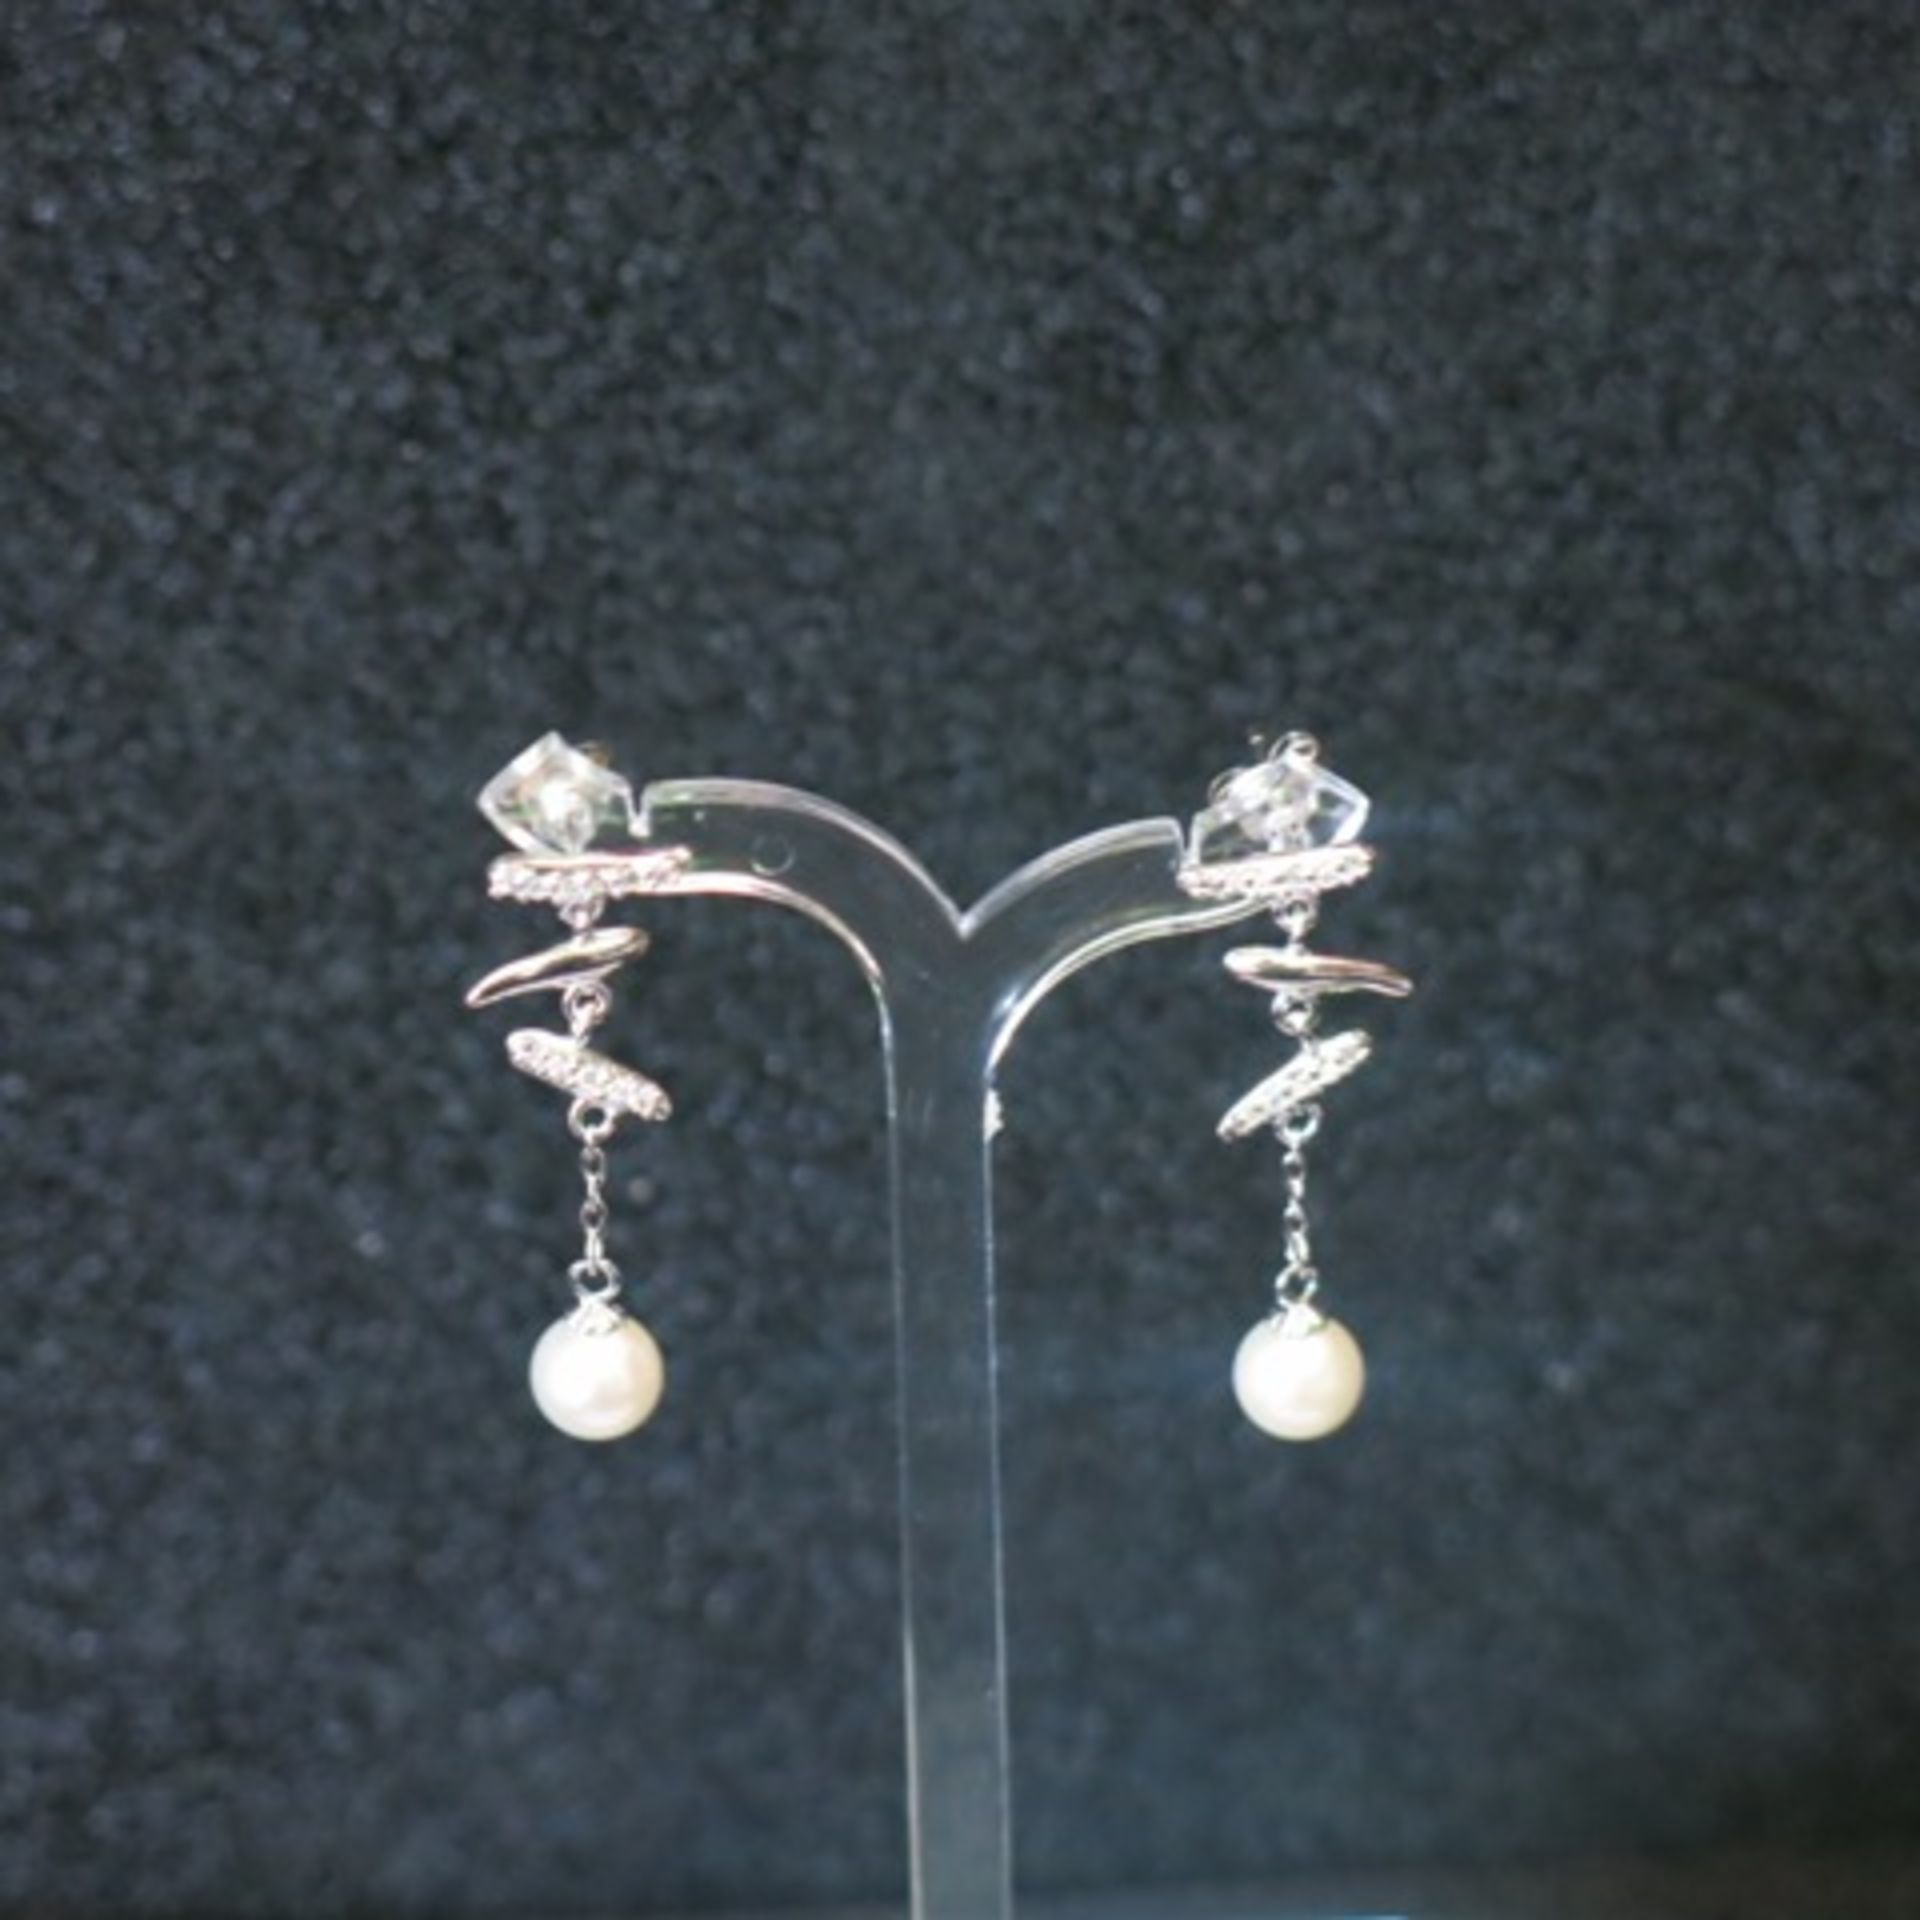 Pair of Pearl Drop Earrings. RRP £178.00 - Image 2 of 2